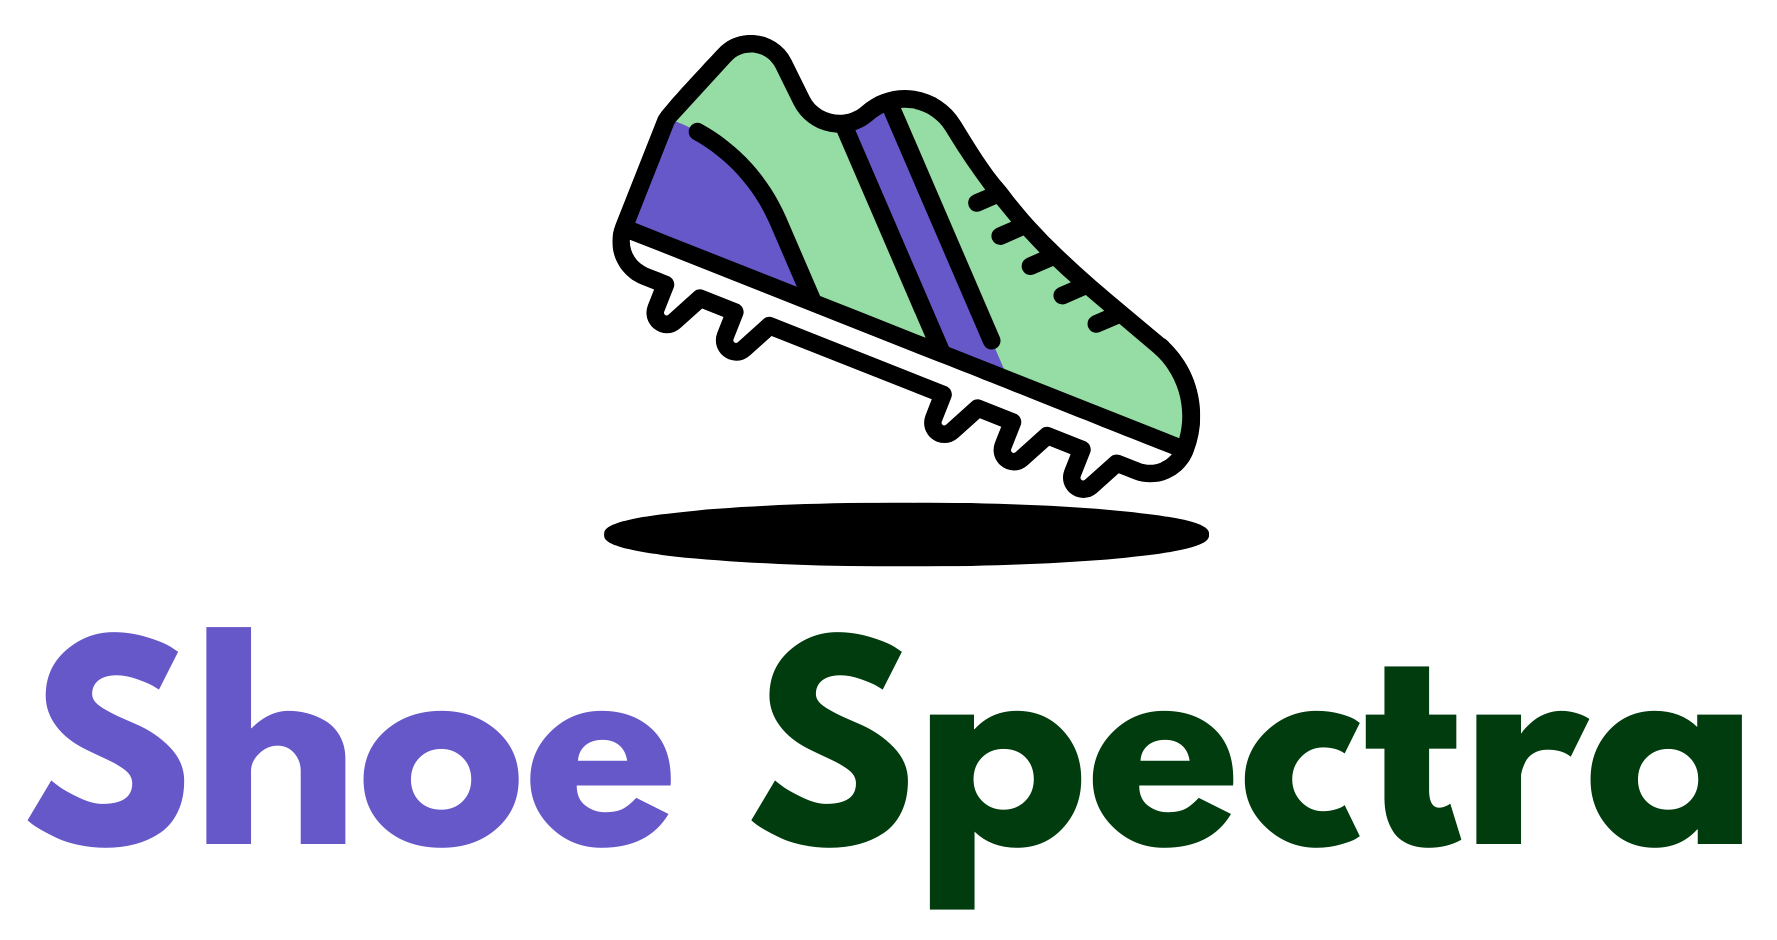 shoespectra official logo